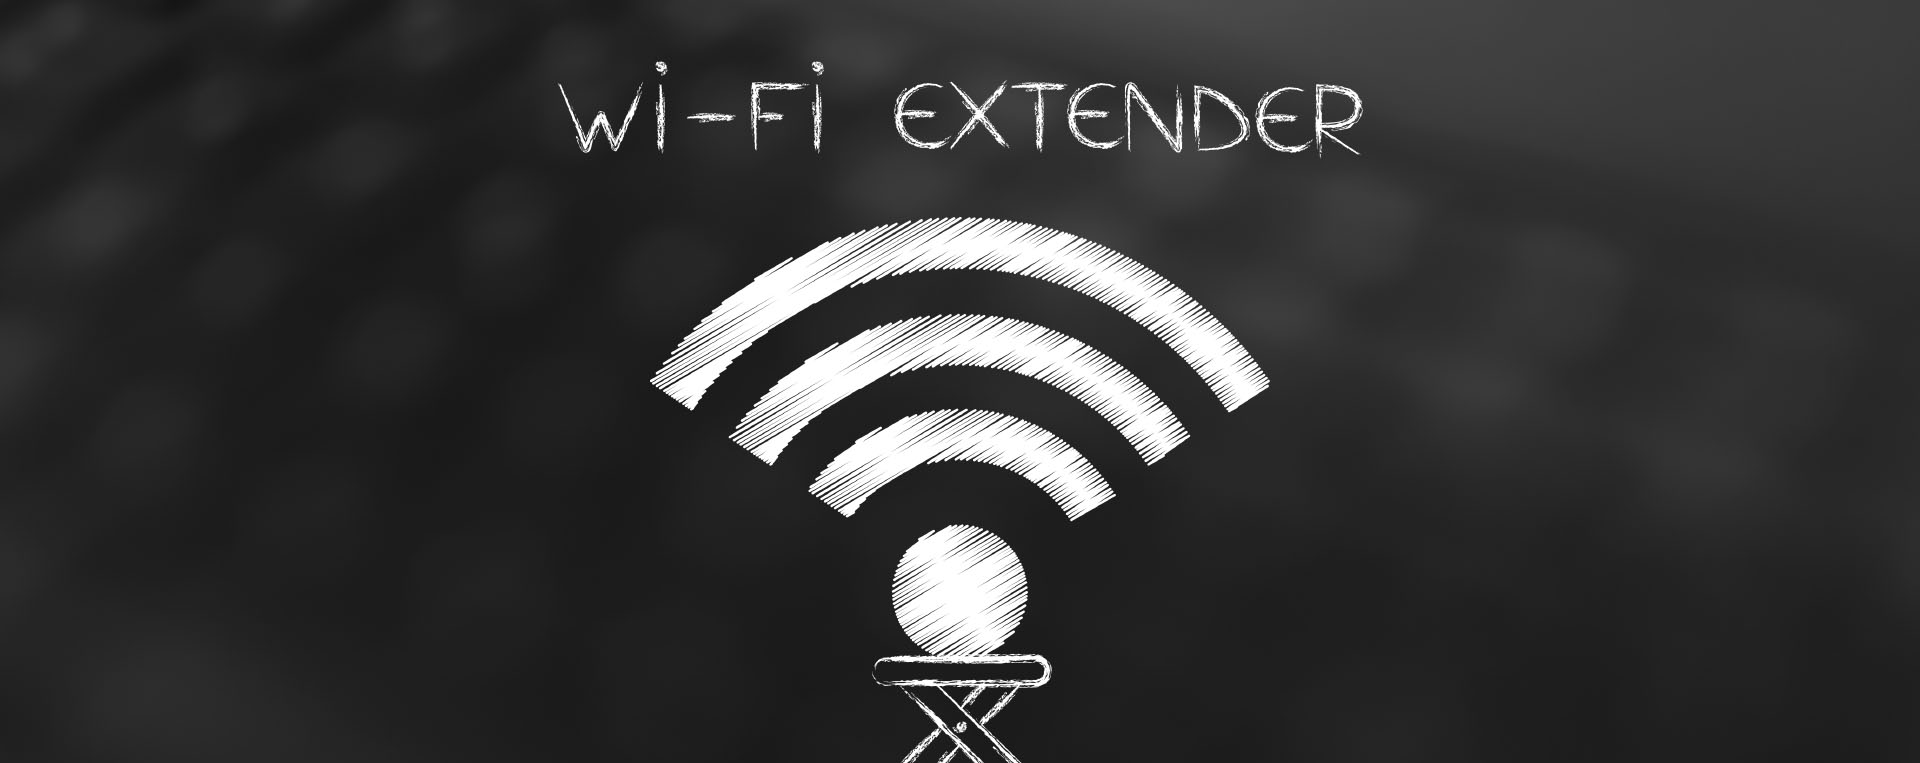 Menggunakan WiFi Extender, Perlukah?